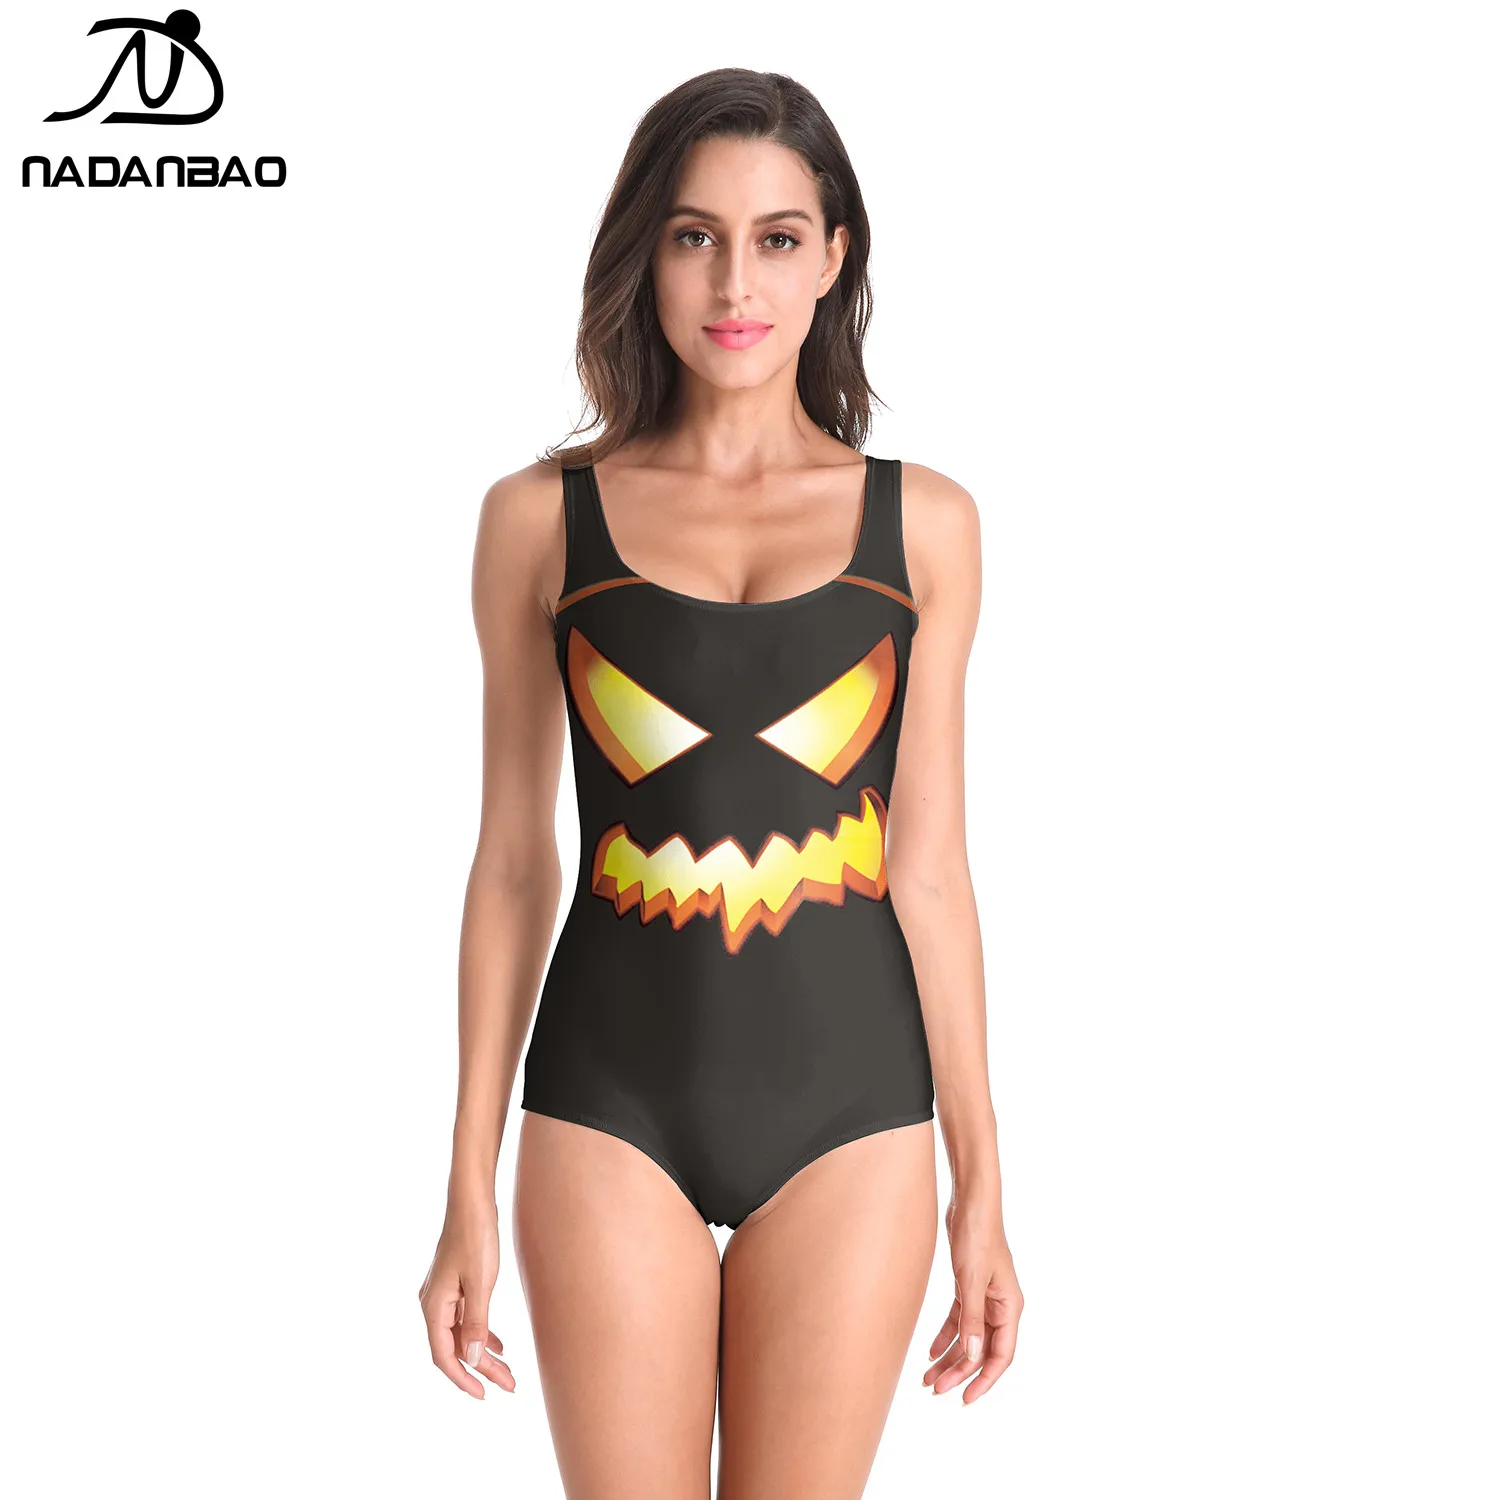 Nadanbao Brand 2019 Best Selling Custom 3d Printed Beachwear Sexy Bathing Suits One Piece